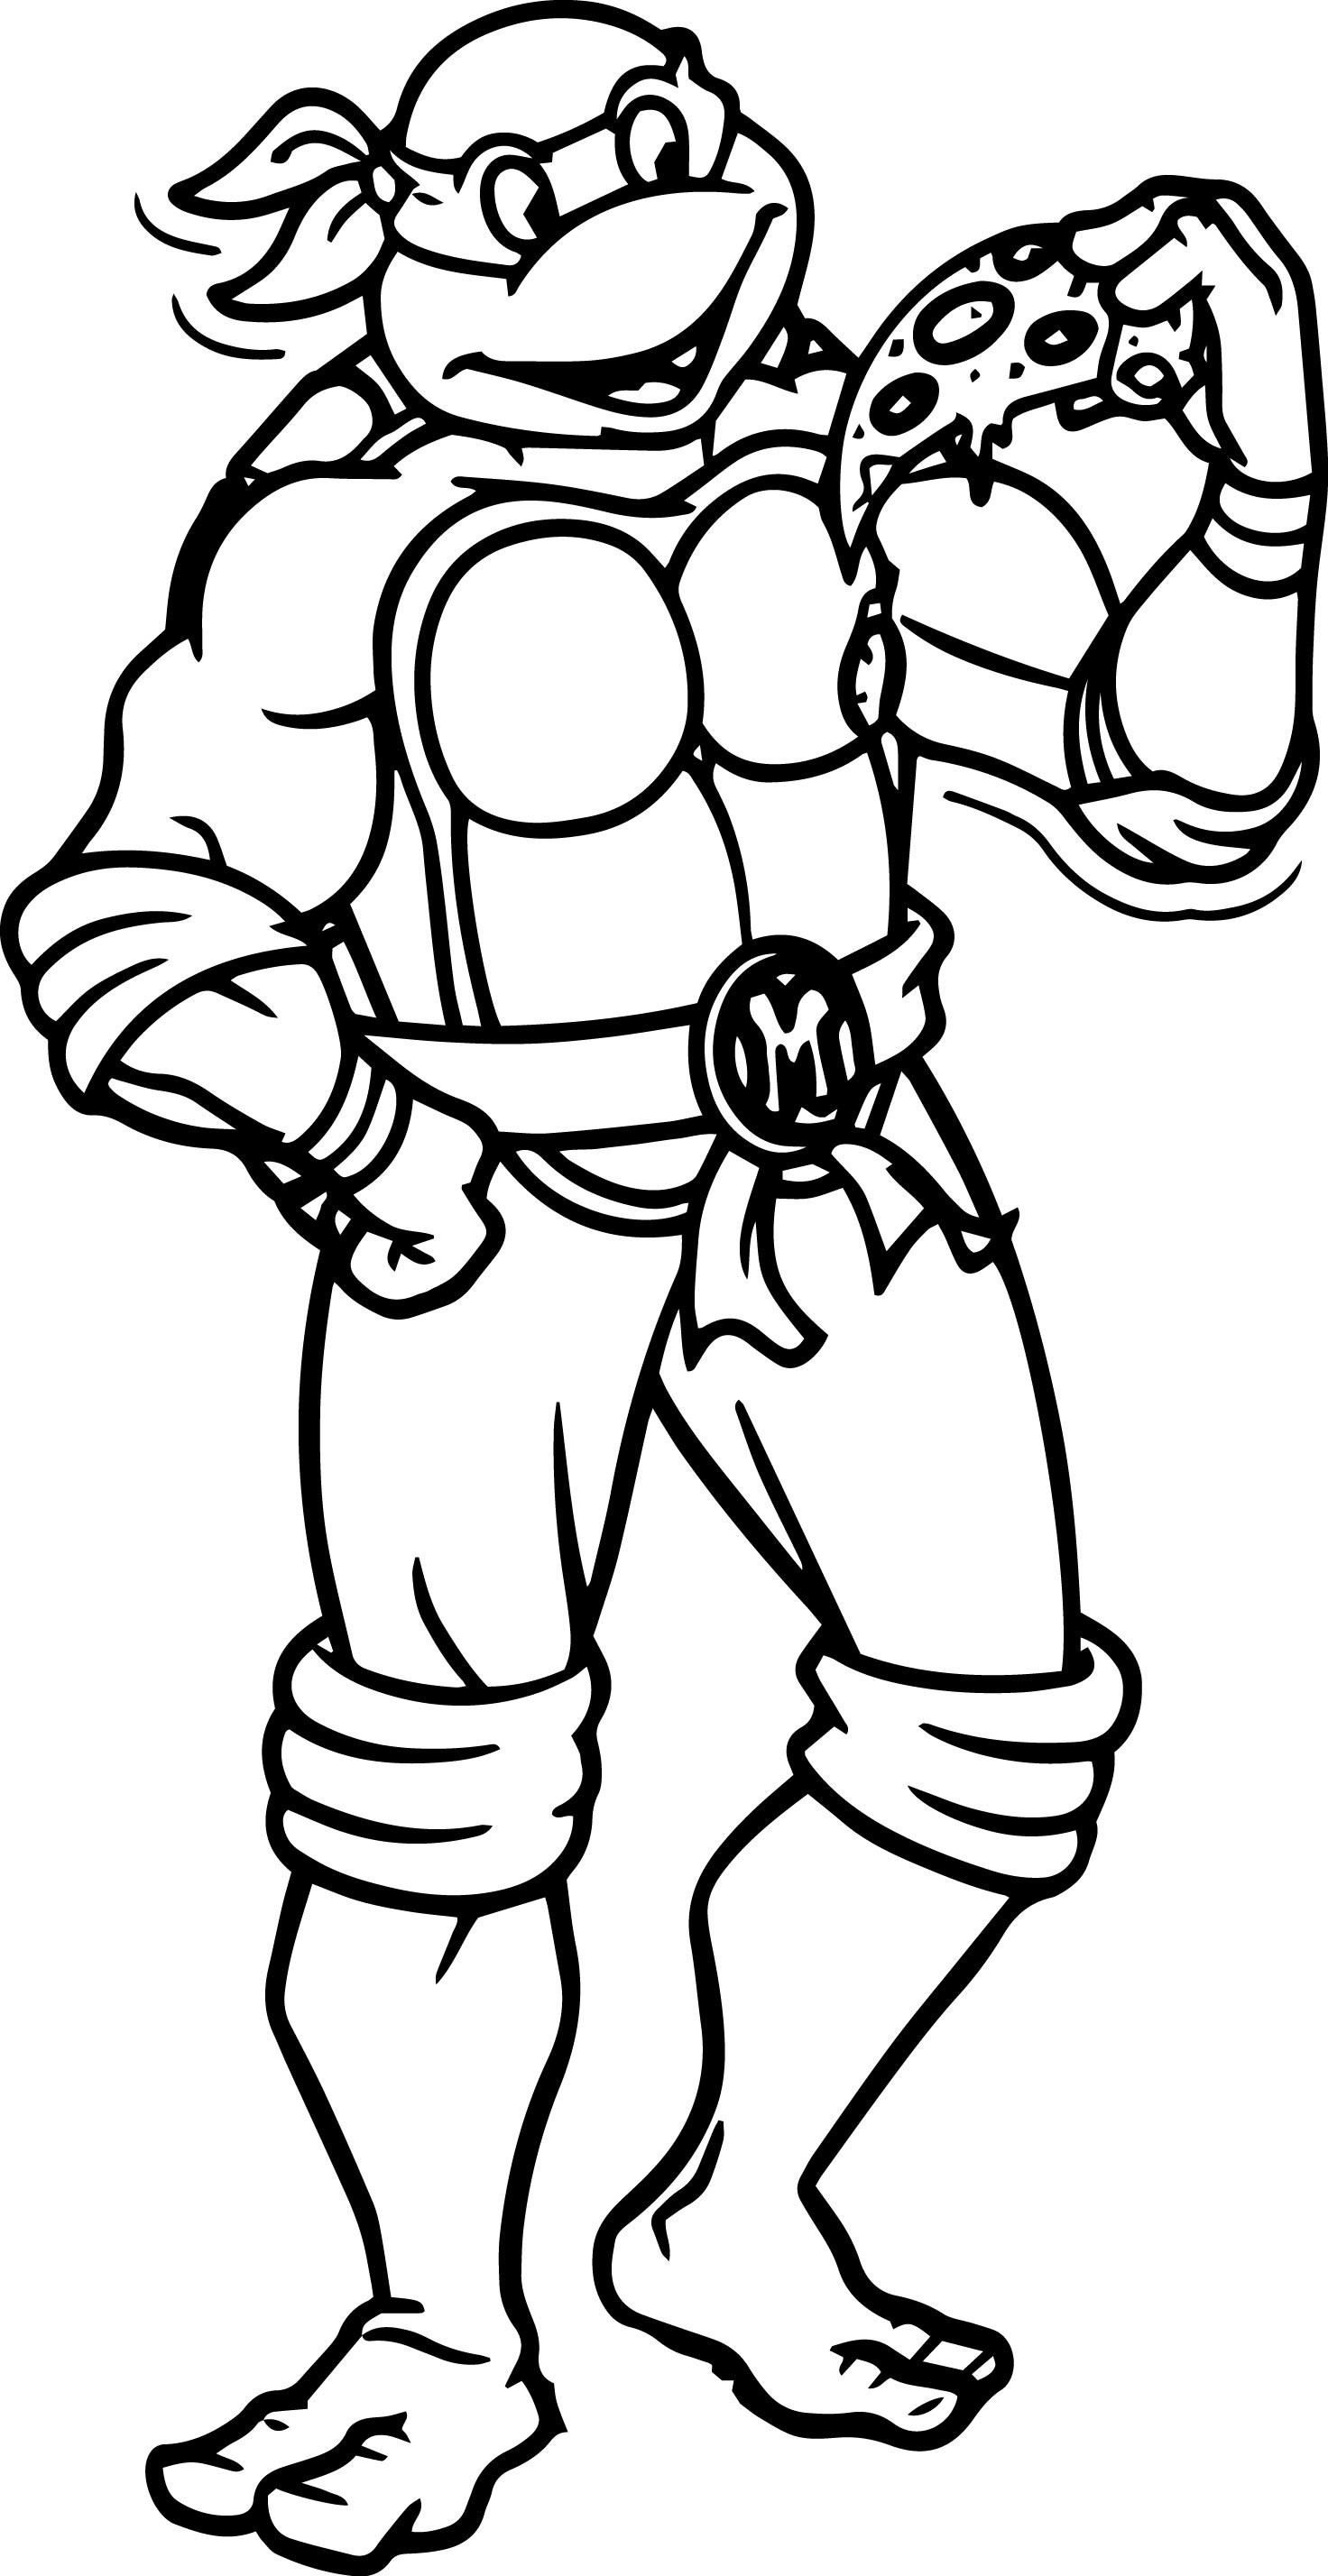 Coloring Sheets For Boys Ninja Turtles
 Teenage Mutant Ninja Turtle Coloring Pages coloringsuite